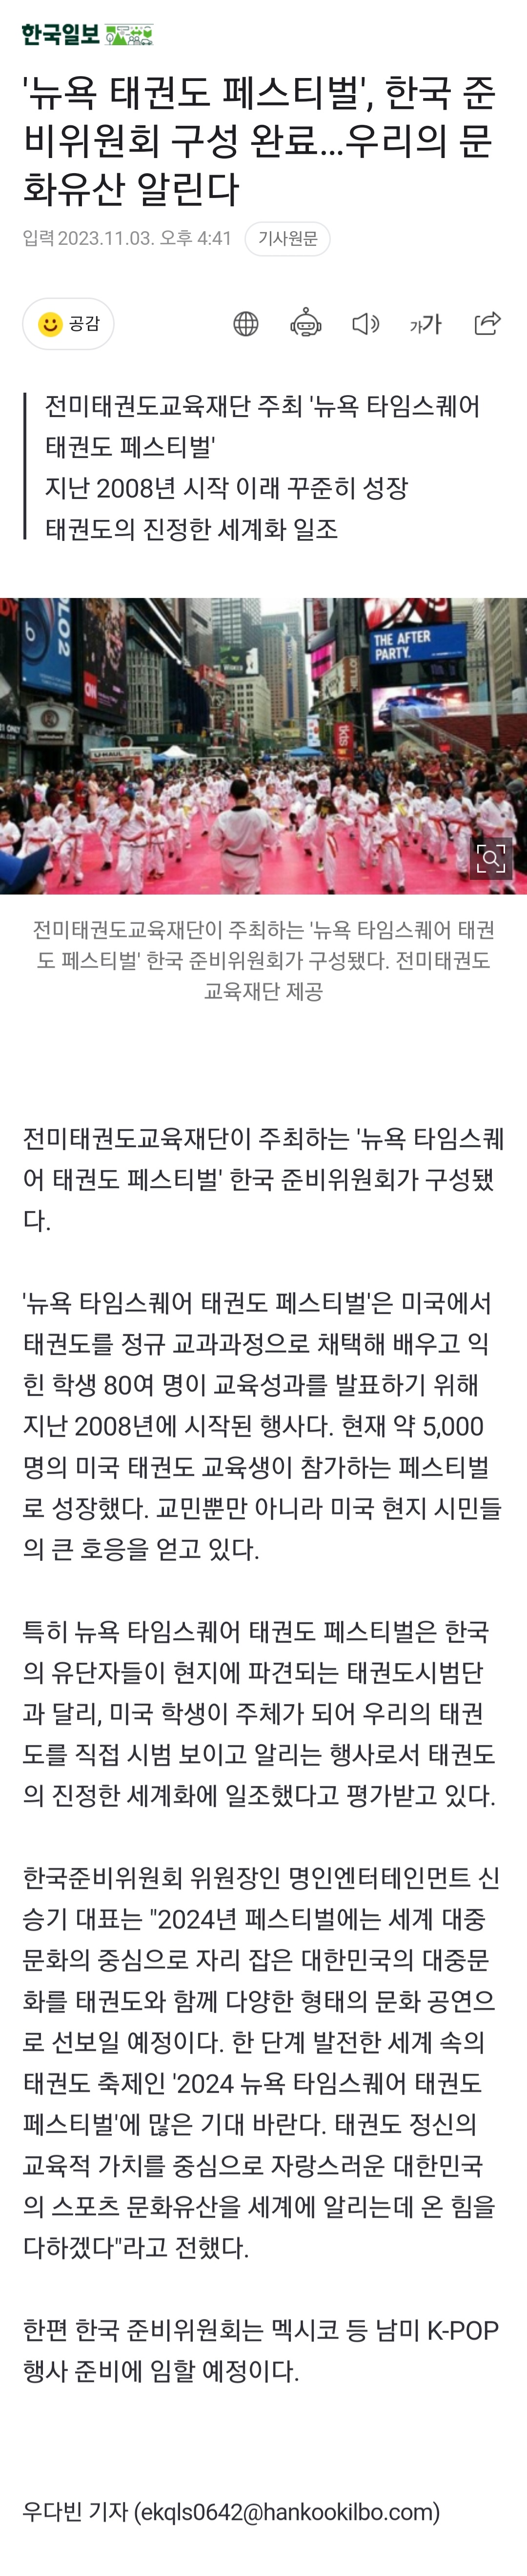 한국일보 기사원문.jpg